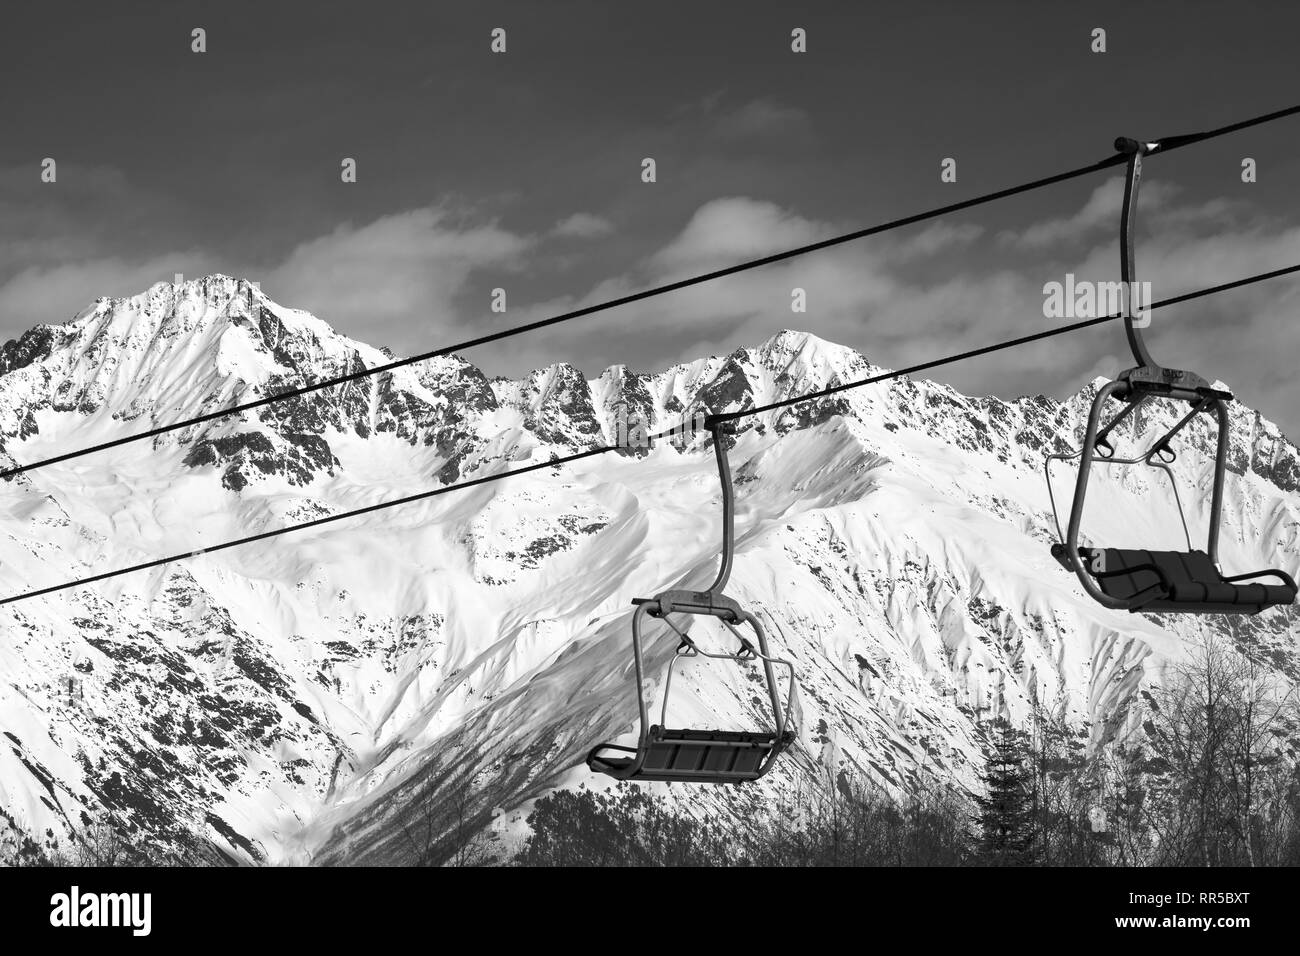 Sur le télésiège de ski et de montagnes de neige à nice journée ensoleillée. Montagnes du Caucase en hiver. Hatsvali Svaneti, région de la Géorgie. Ton noir et blanc Banque D'Images